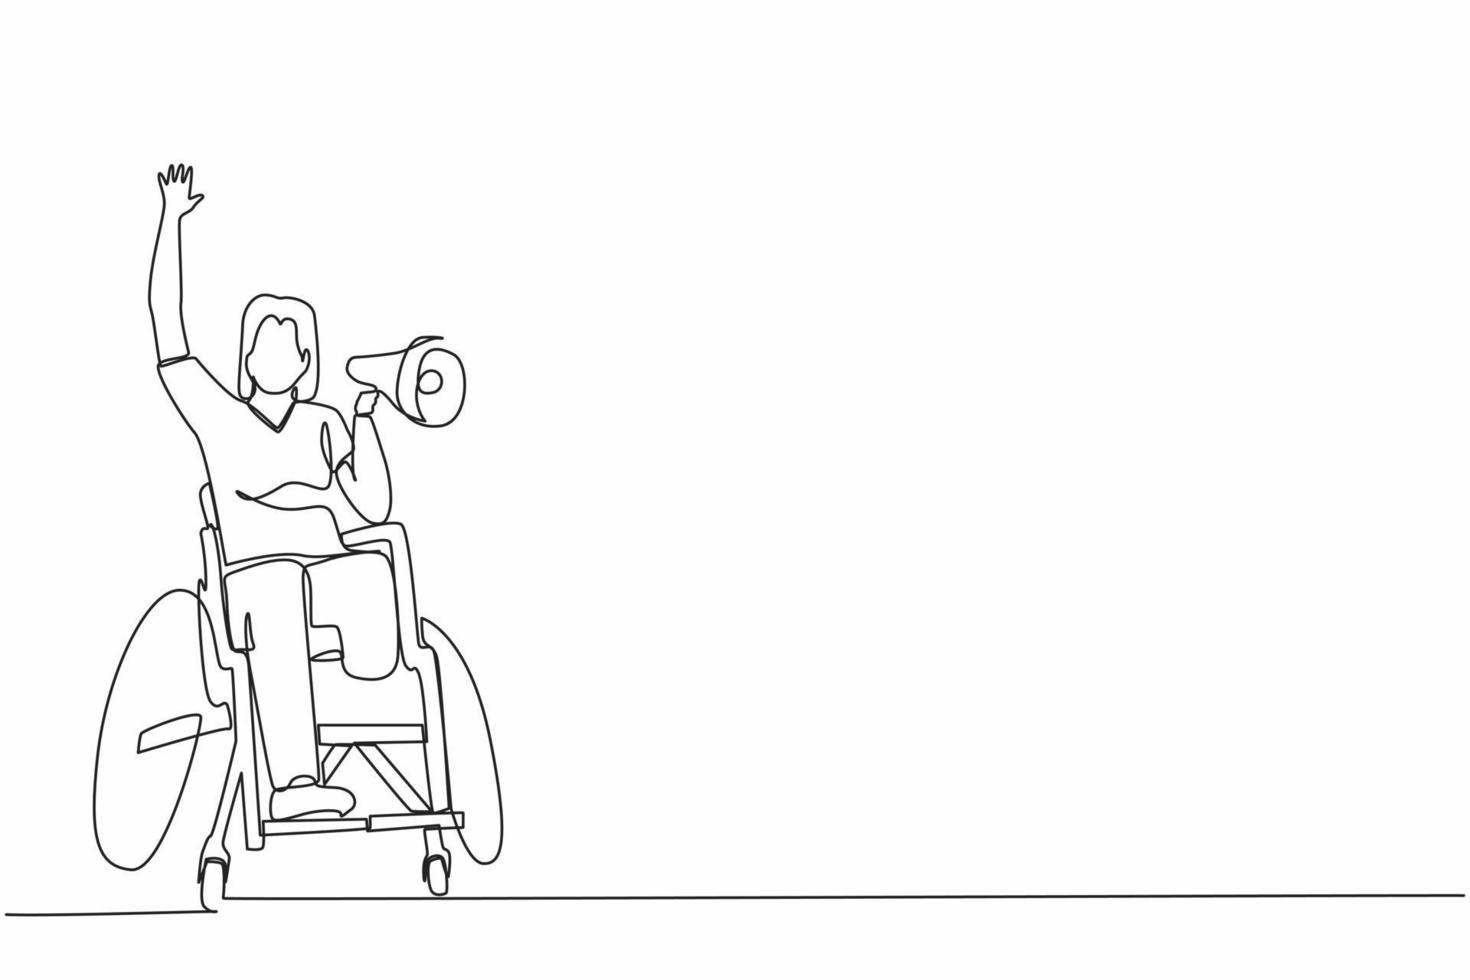 continu één lijntekening gelukkige handicap jonge vrouw in rolstoel viert het winnen van voetbalteam met megafoon. rolstoelgebruiker van voetbalfans. enkele lijn tekenen ontwerp vectorafbeelding vector